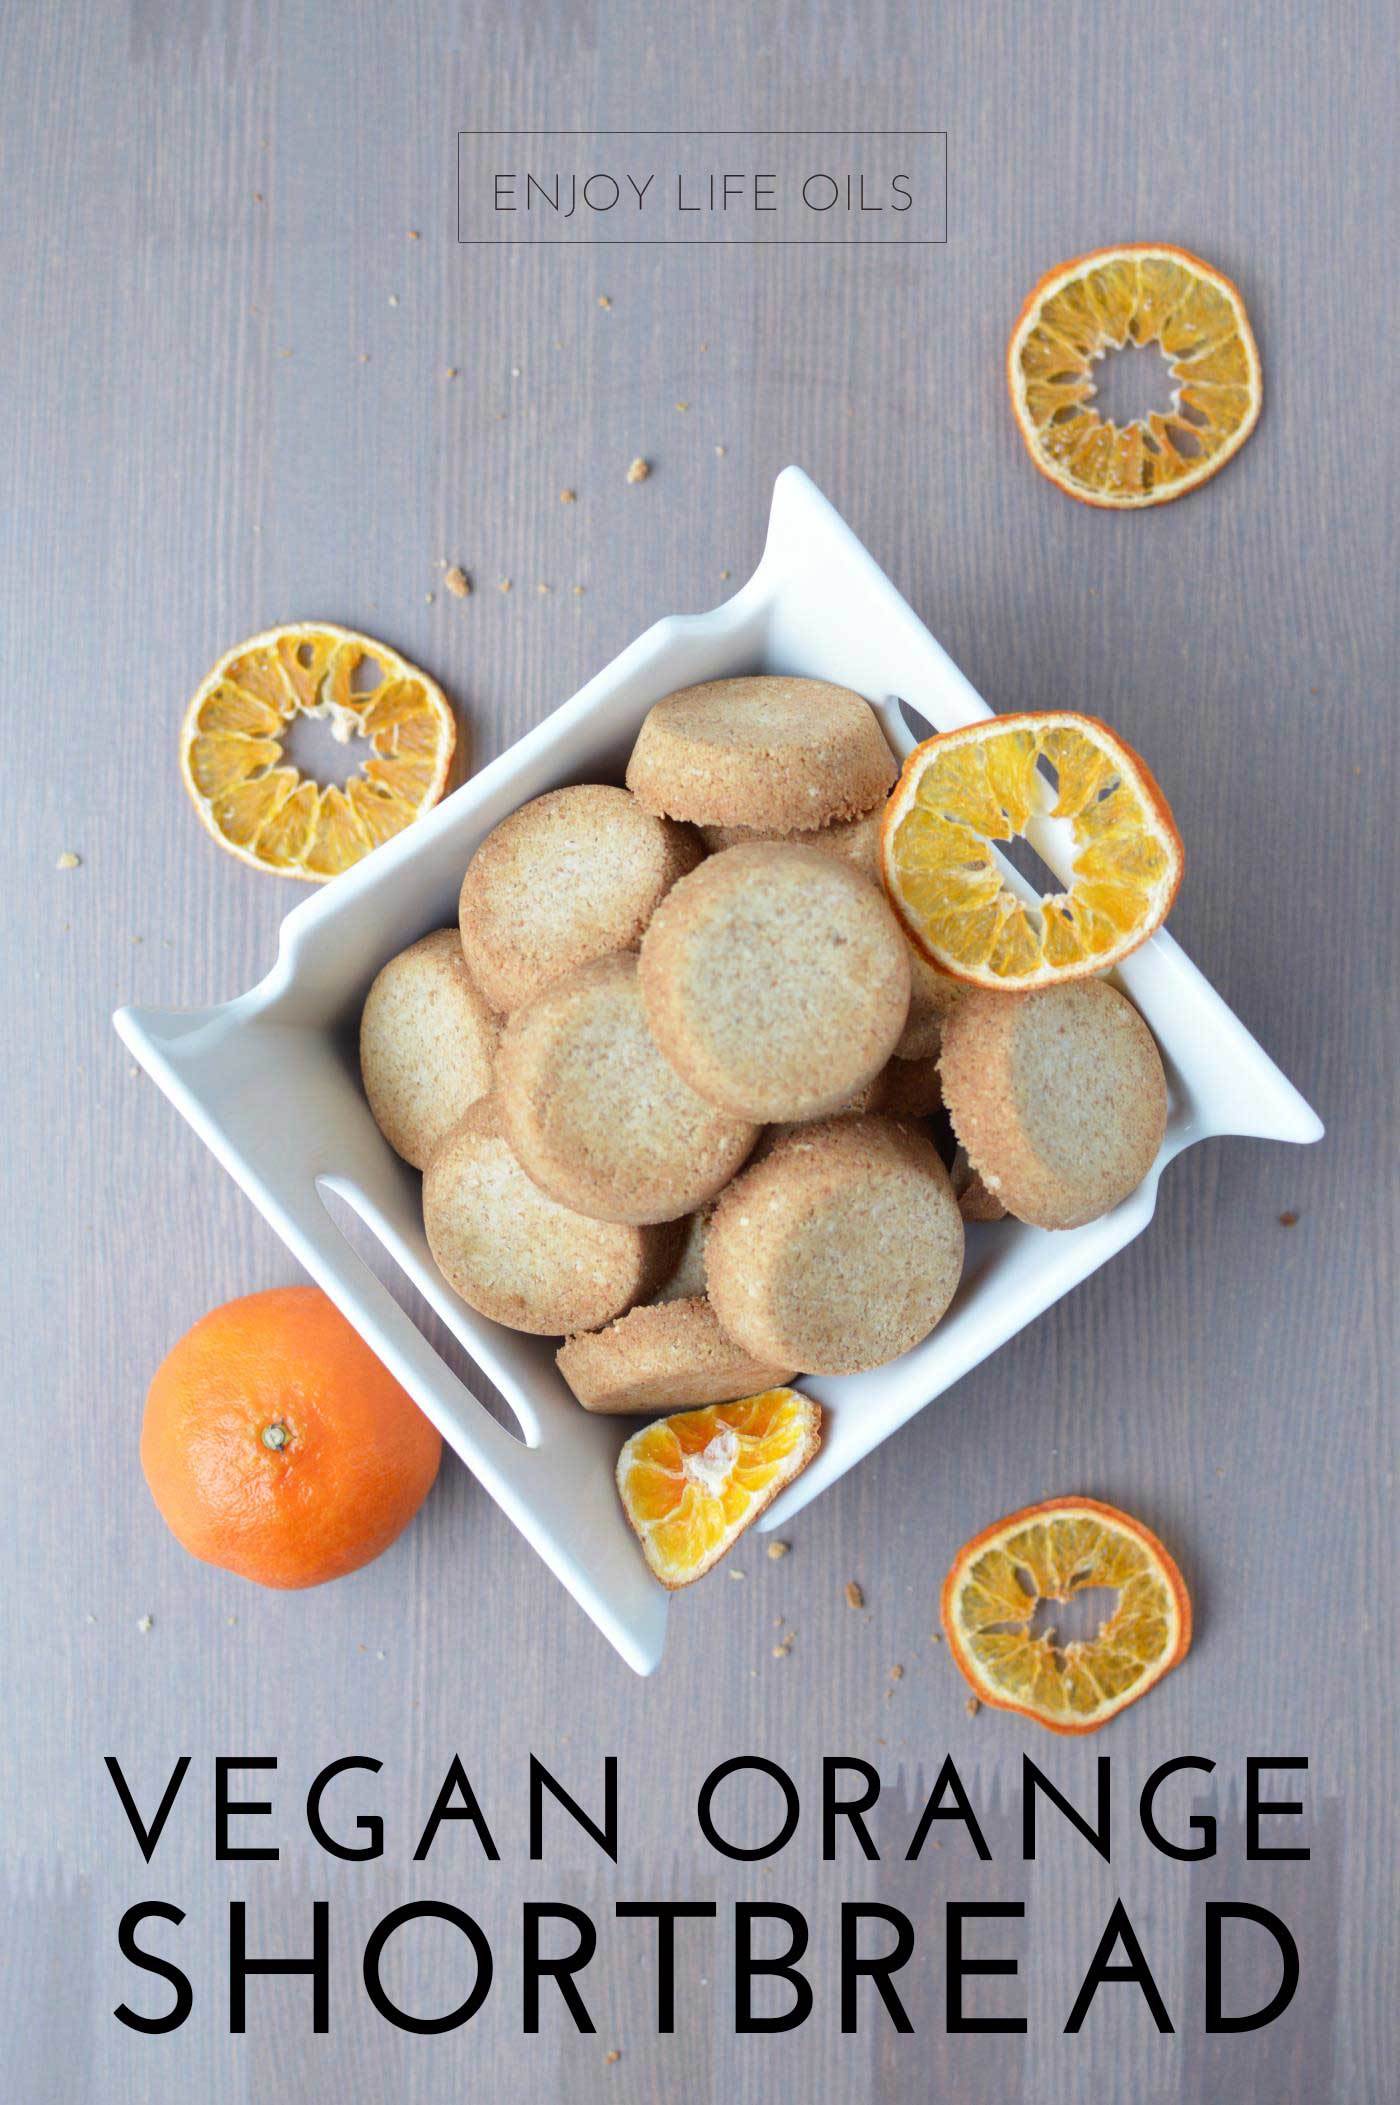 vegan orange shortbread recipe with orange essential oils via @skimbaco